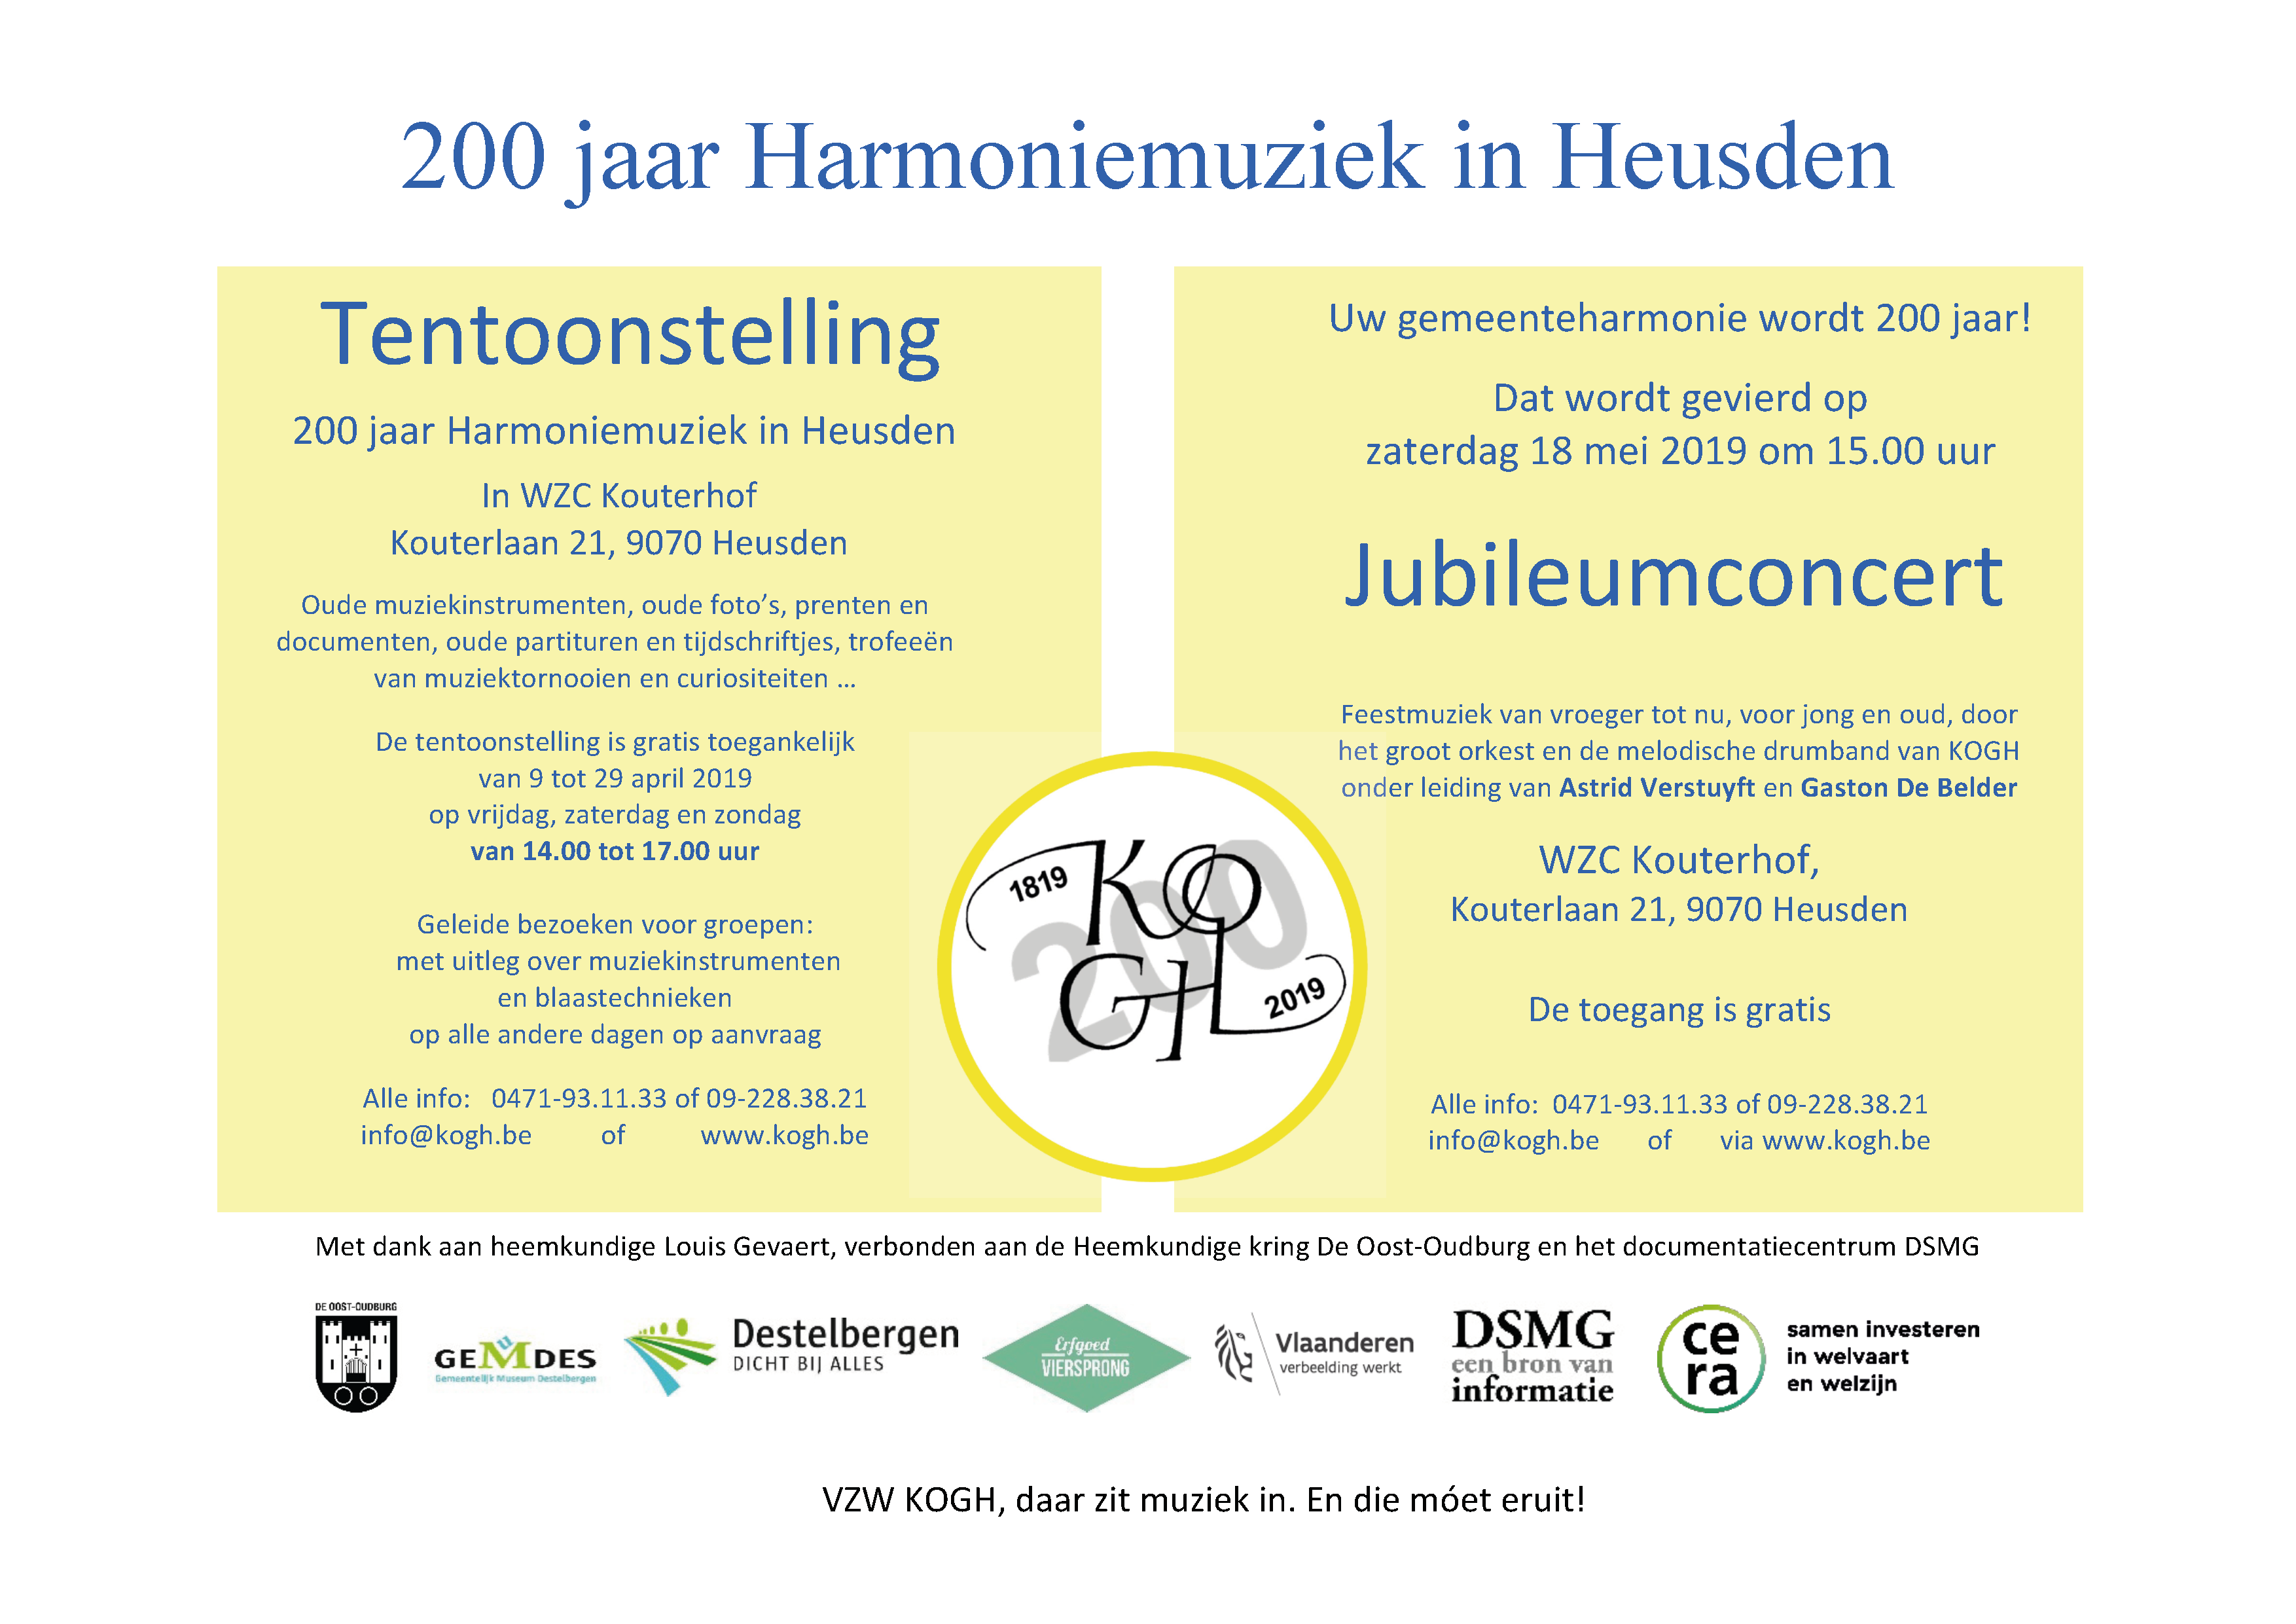 200 jaar harmonie te Heusden in Kouterhof